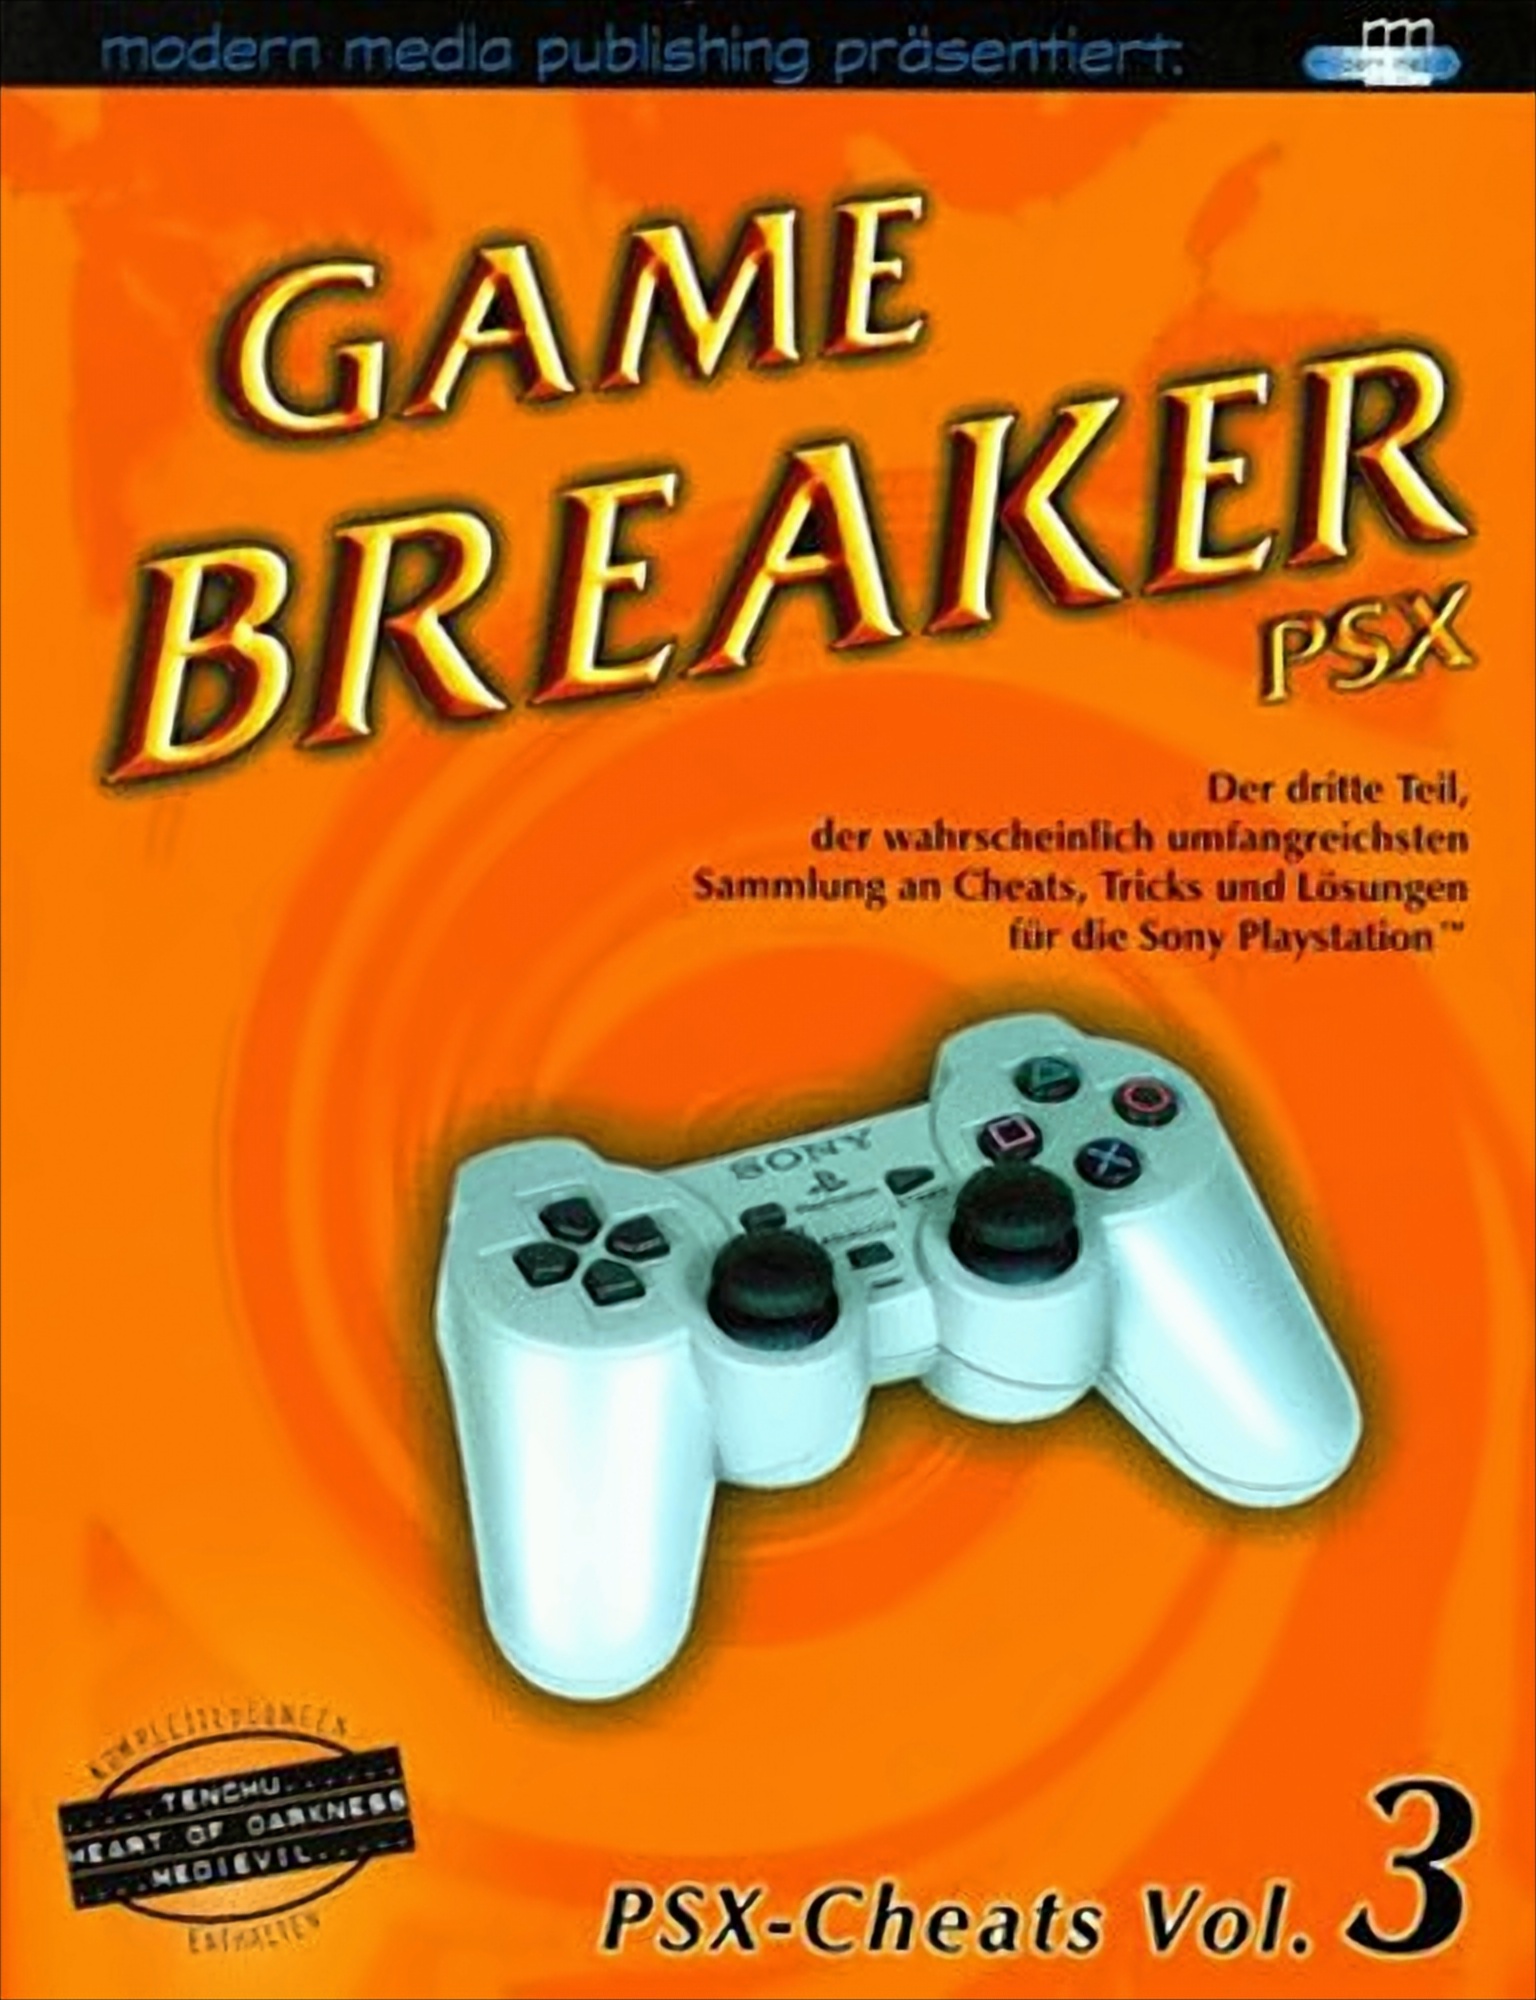 Game Breaker PSX-Cheats Vol. 3 von Diverse